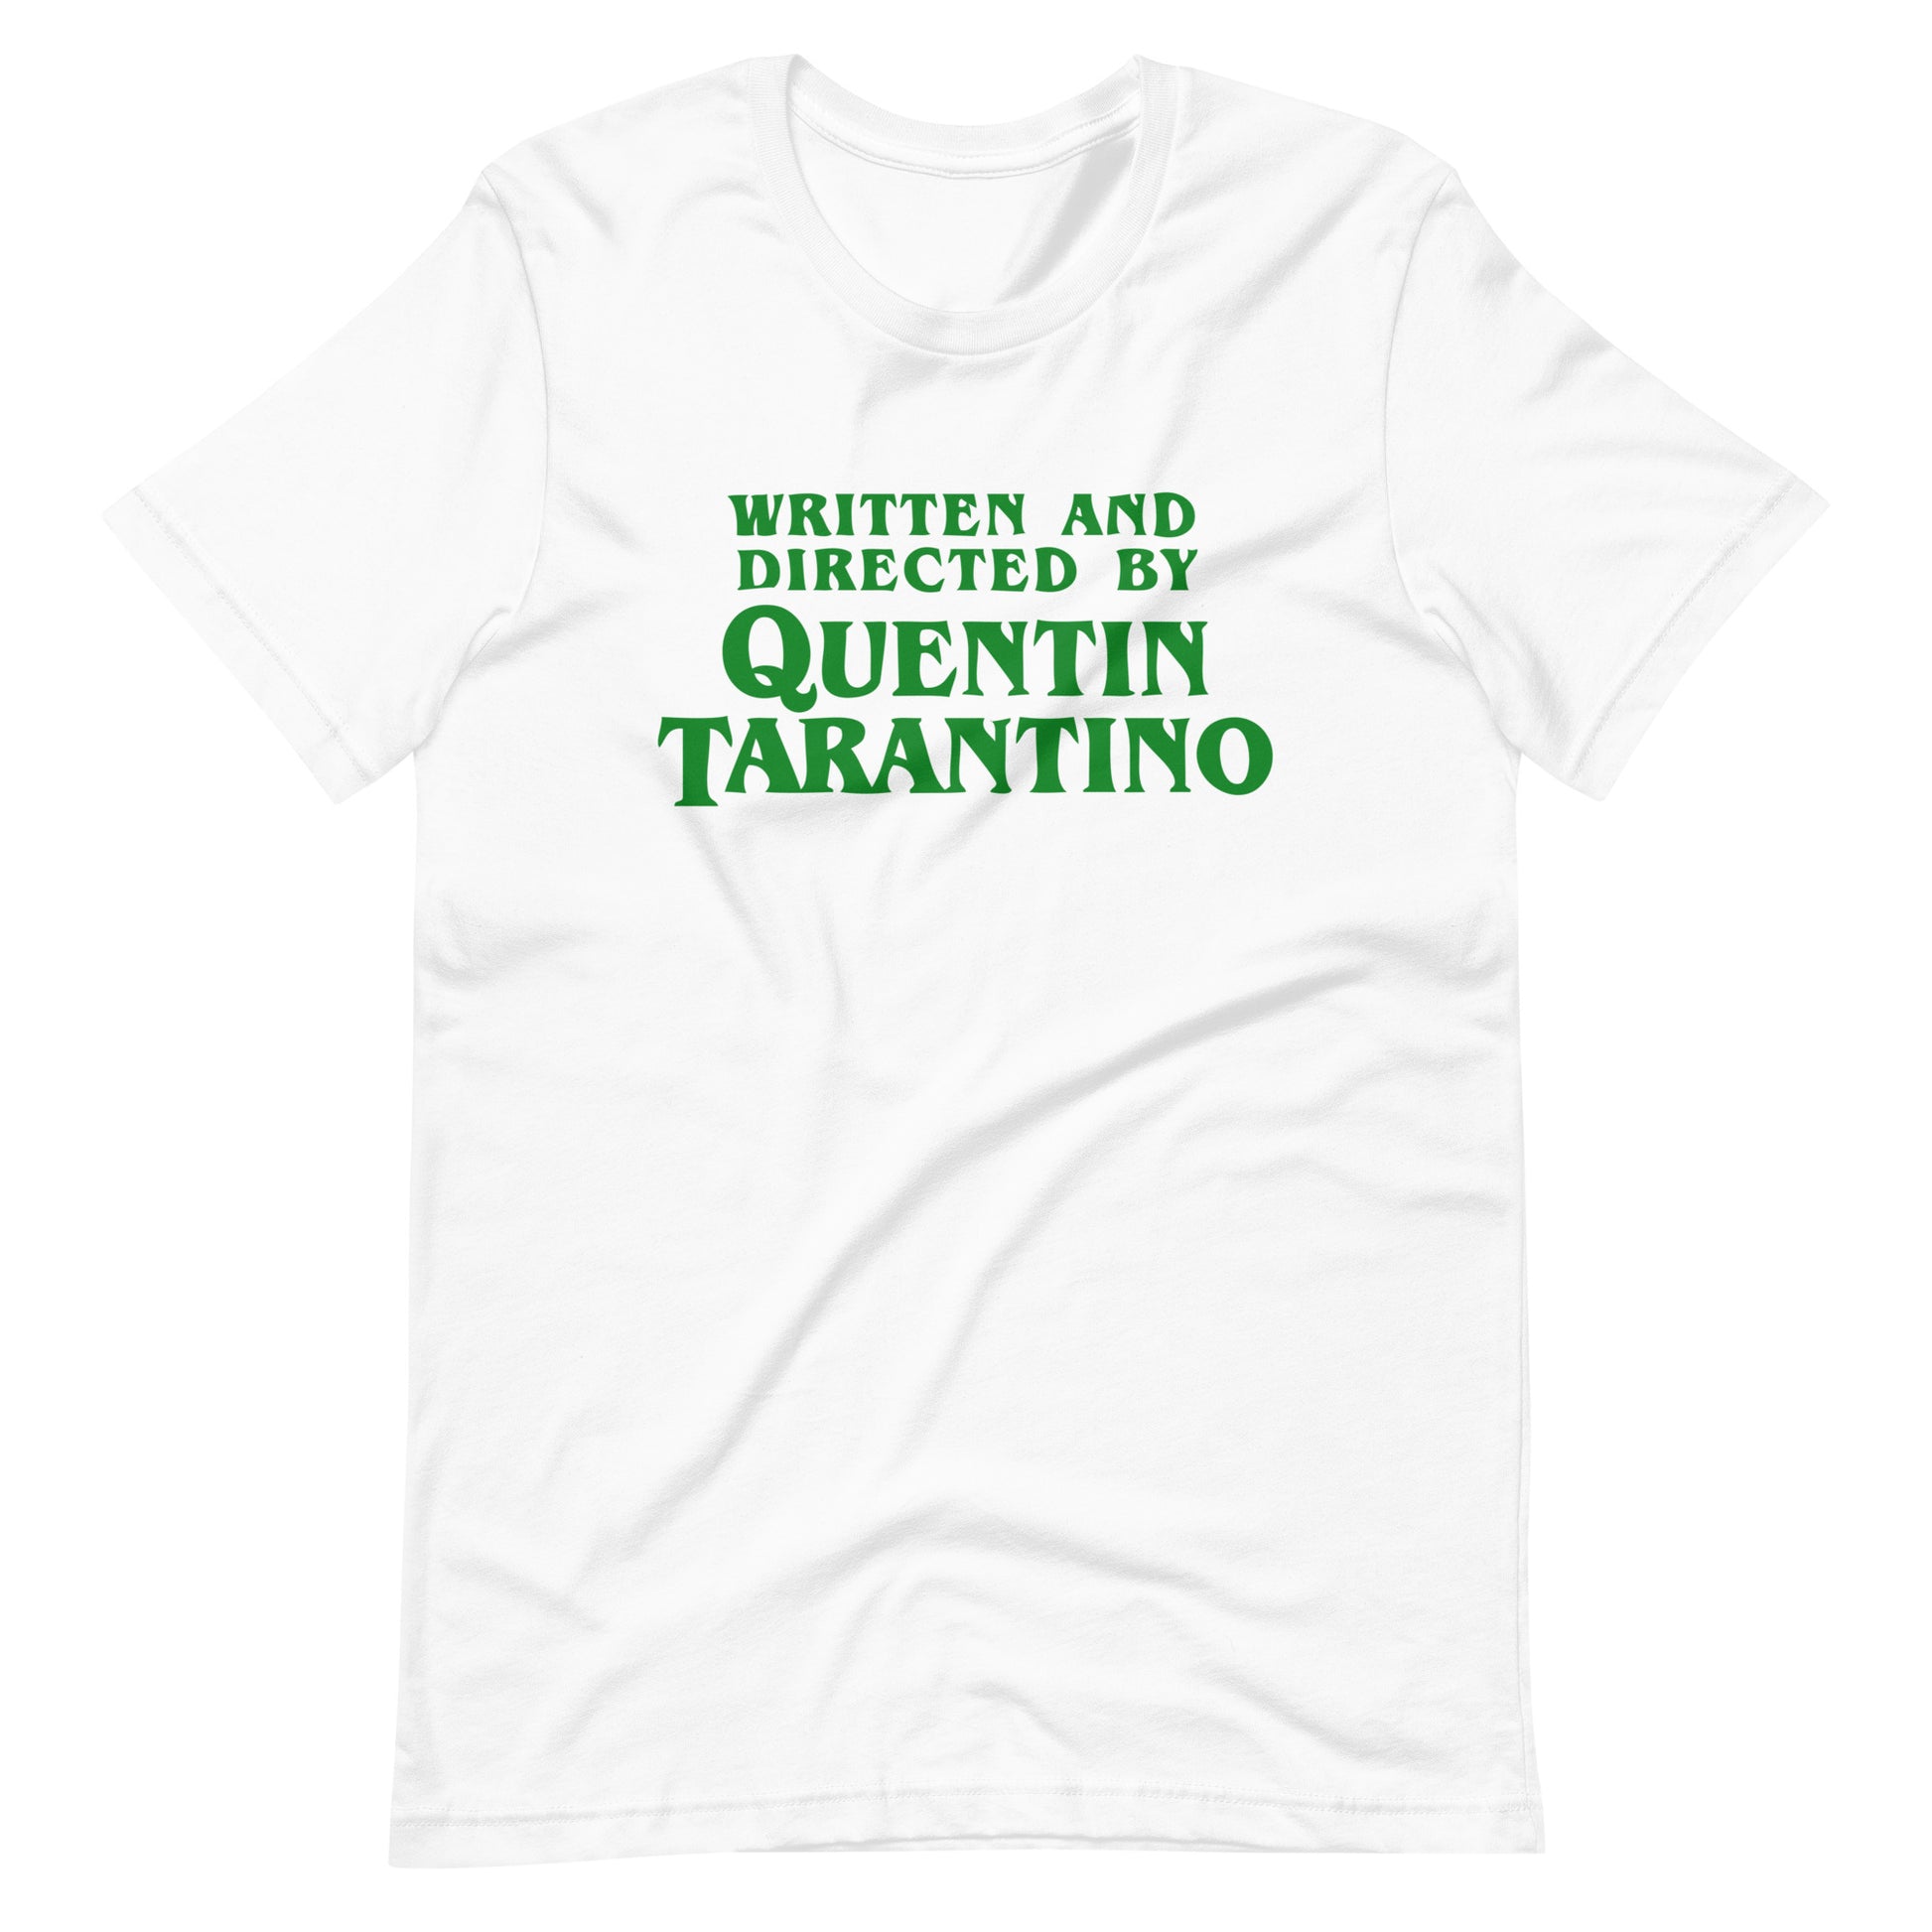 Camiseta Green Tarantino, nuestras opciones de playeras son Unisex. disponible en Superstar. Compra y envíos internacionales.